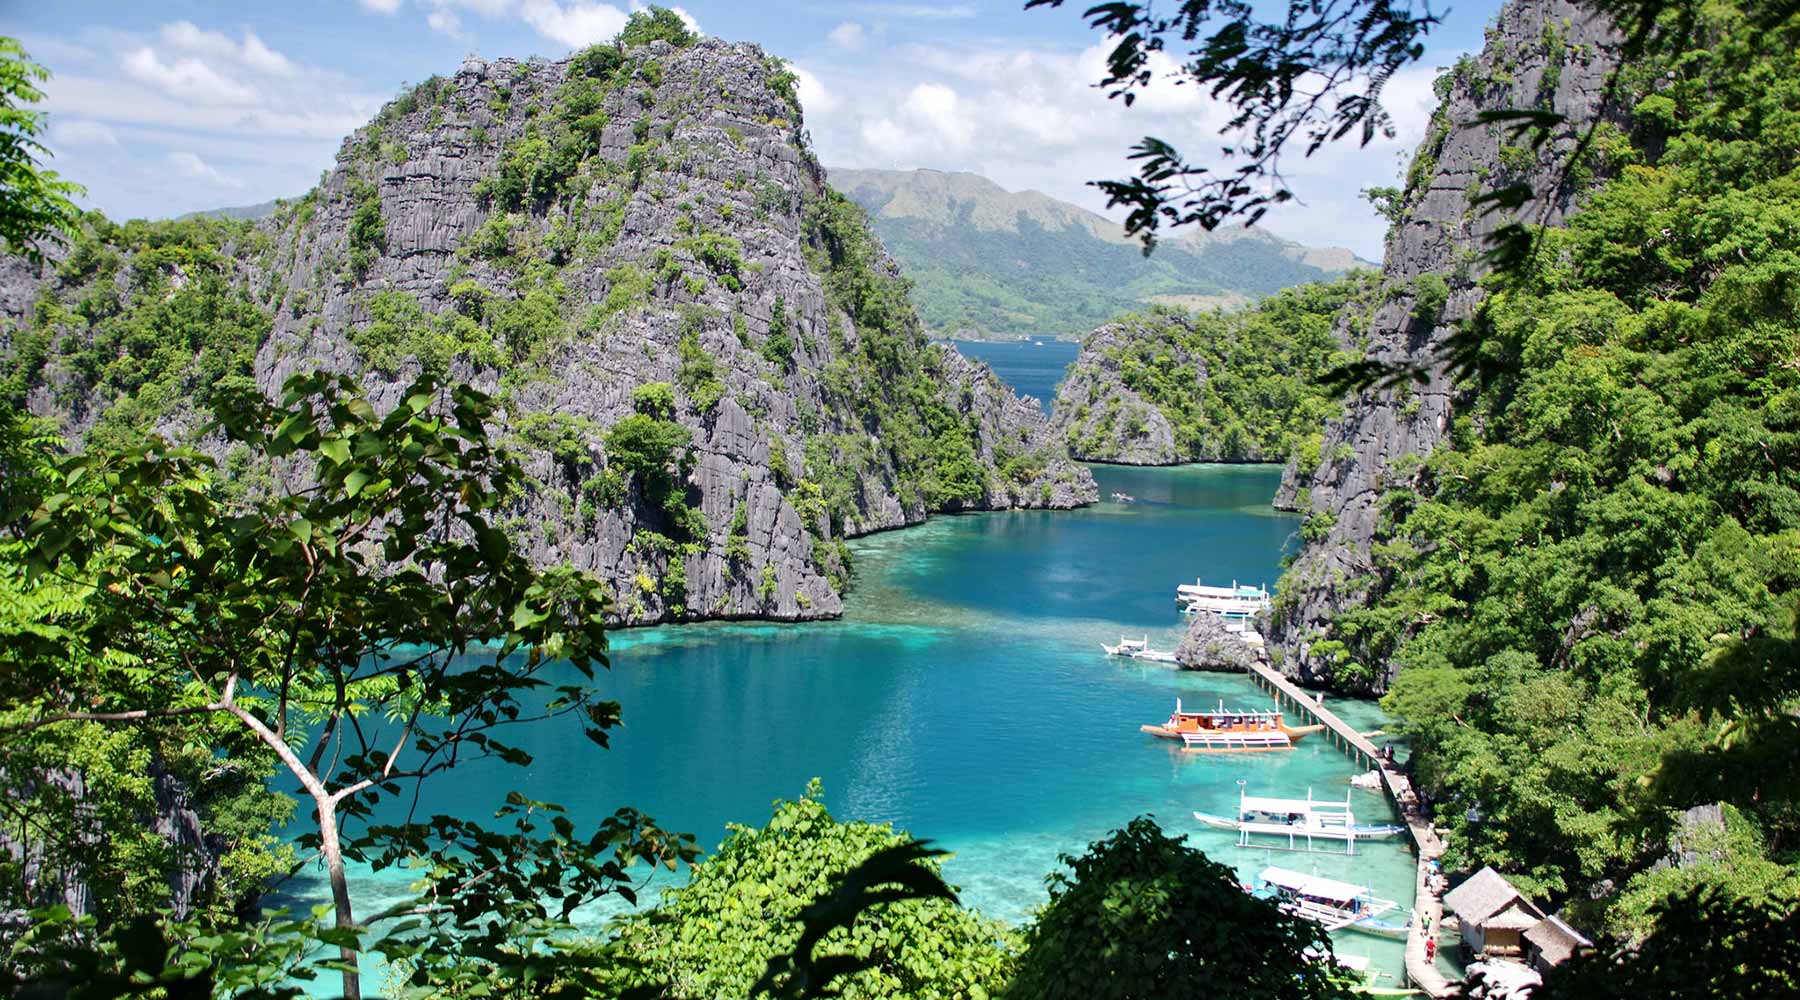 Tổng hợp các địa điểm nhất định phải đi khi du lịch thiên đường Philippines